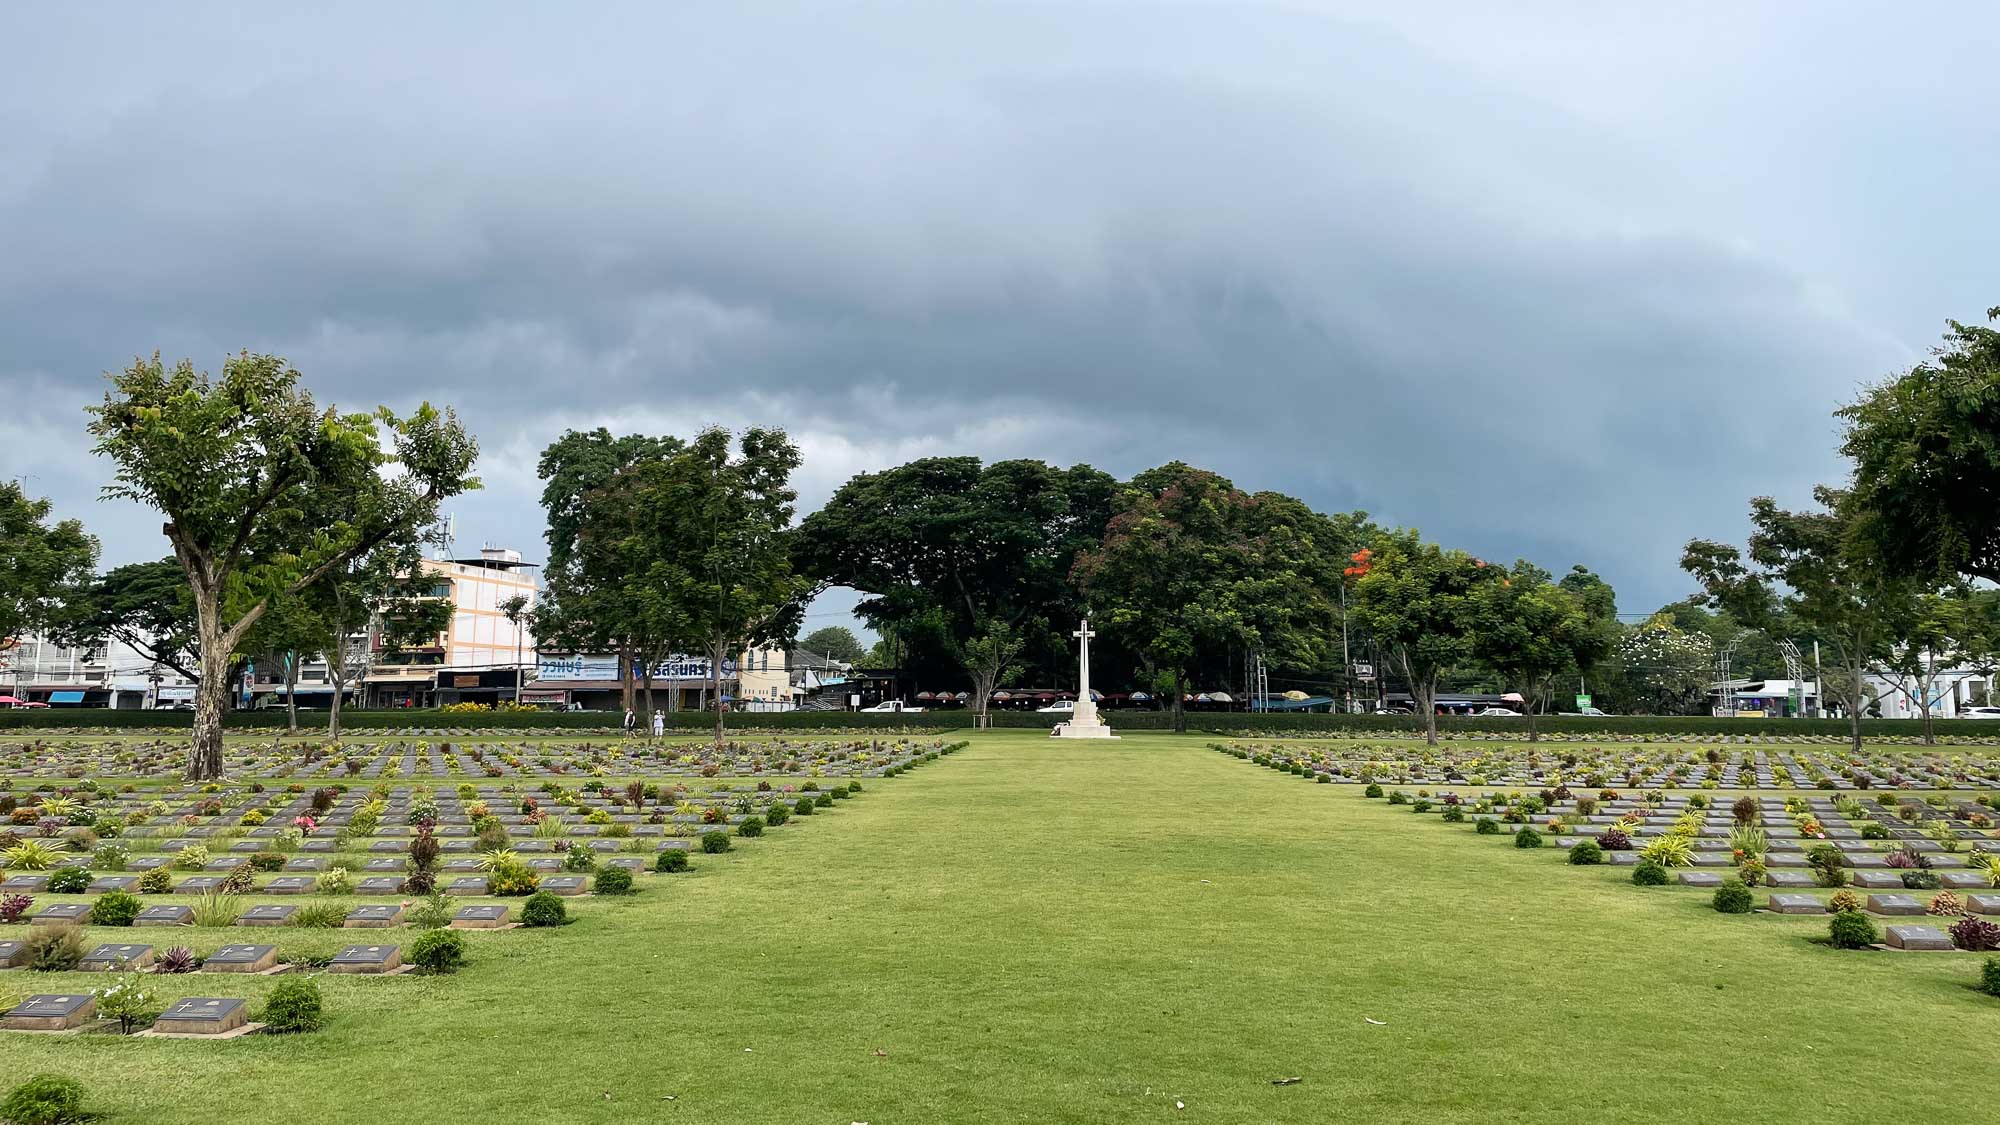 vista geral do cemitério de guerra com seus túmulos num gramado verde e com muitas flores e arvores ao fundo